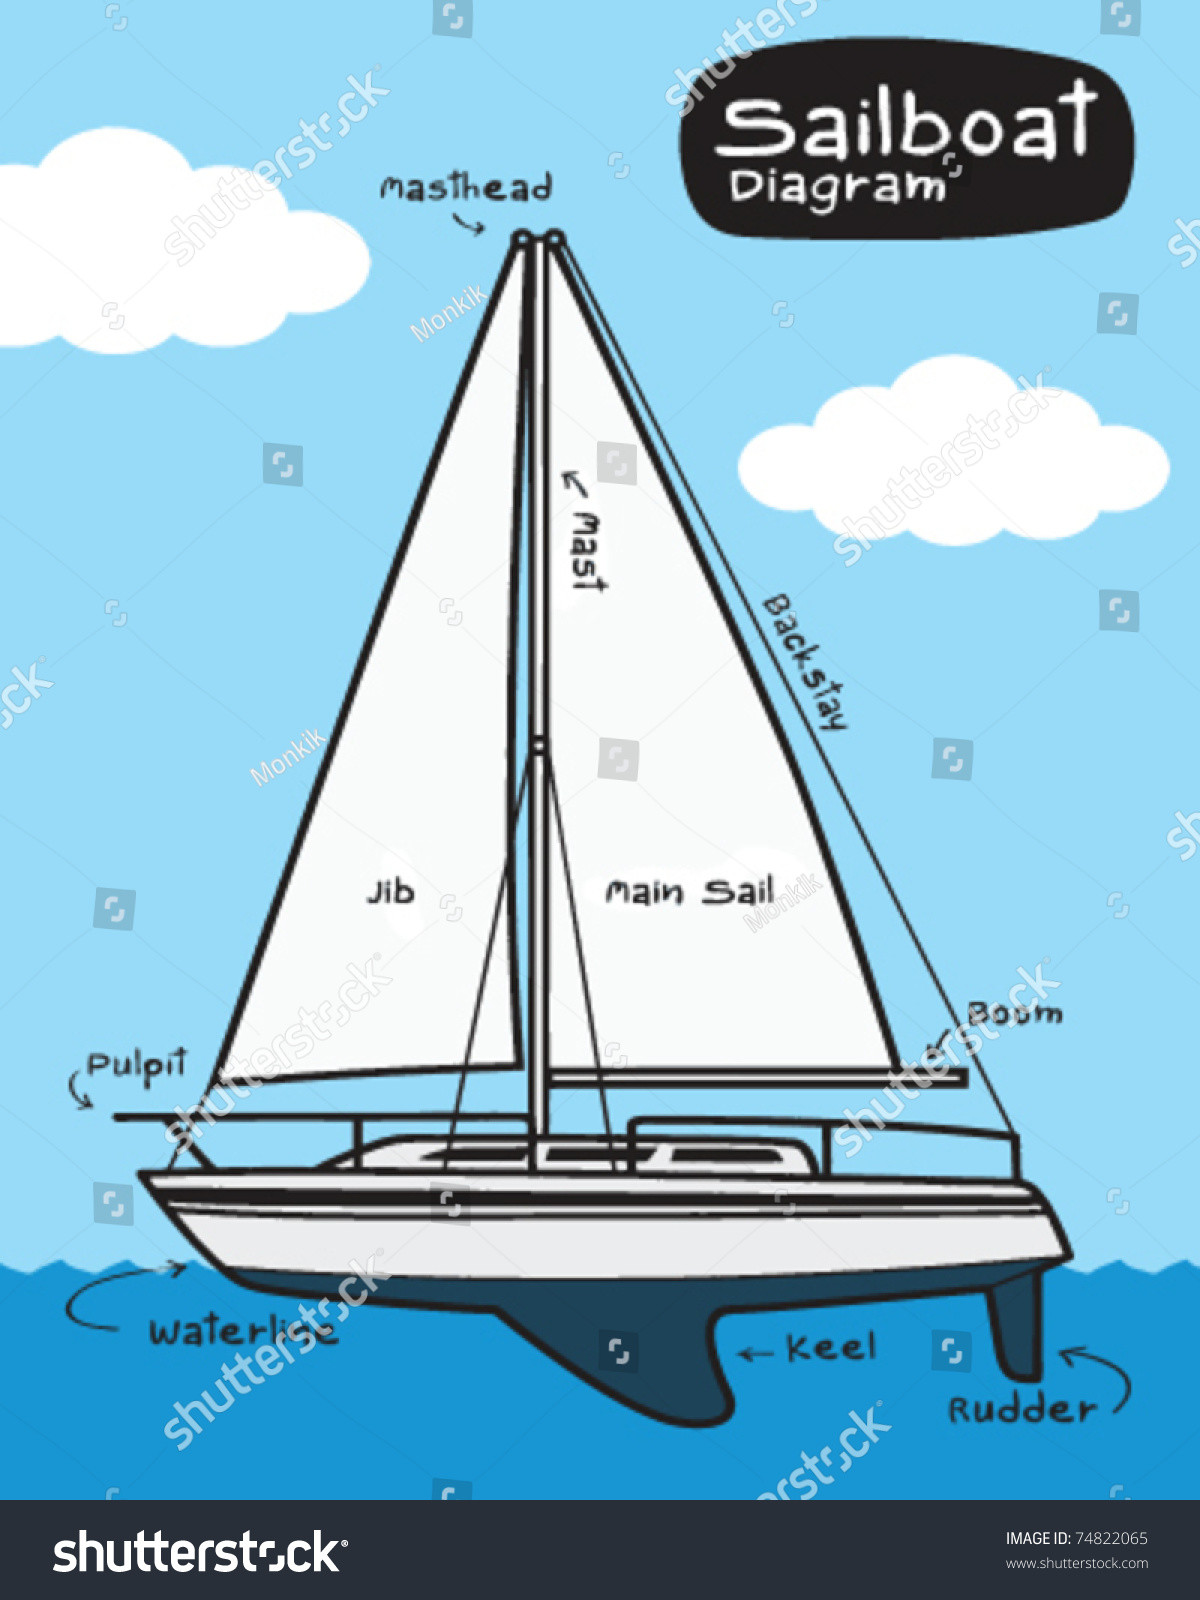 420 Sailboat Detailed Diagram